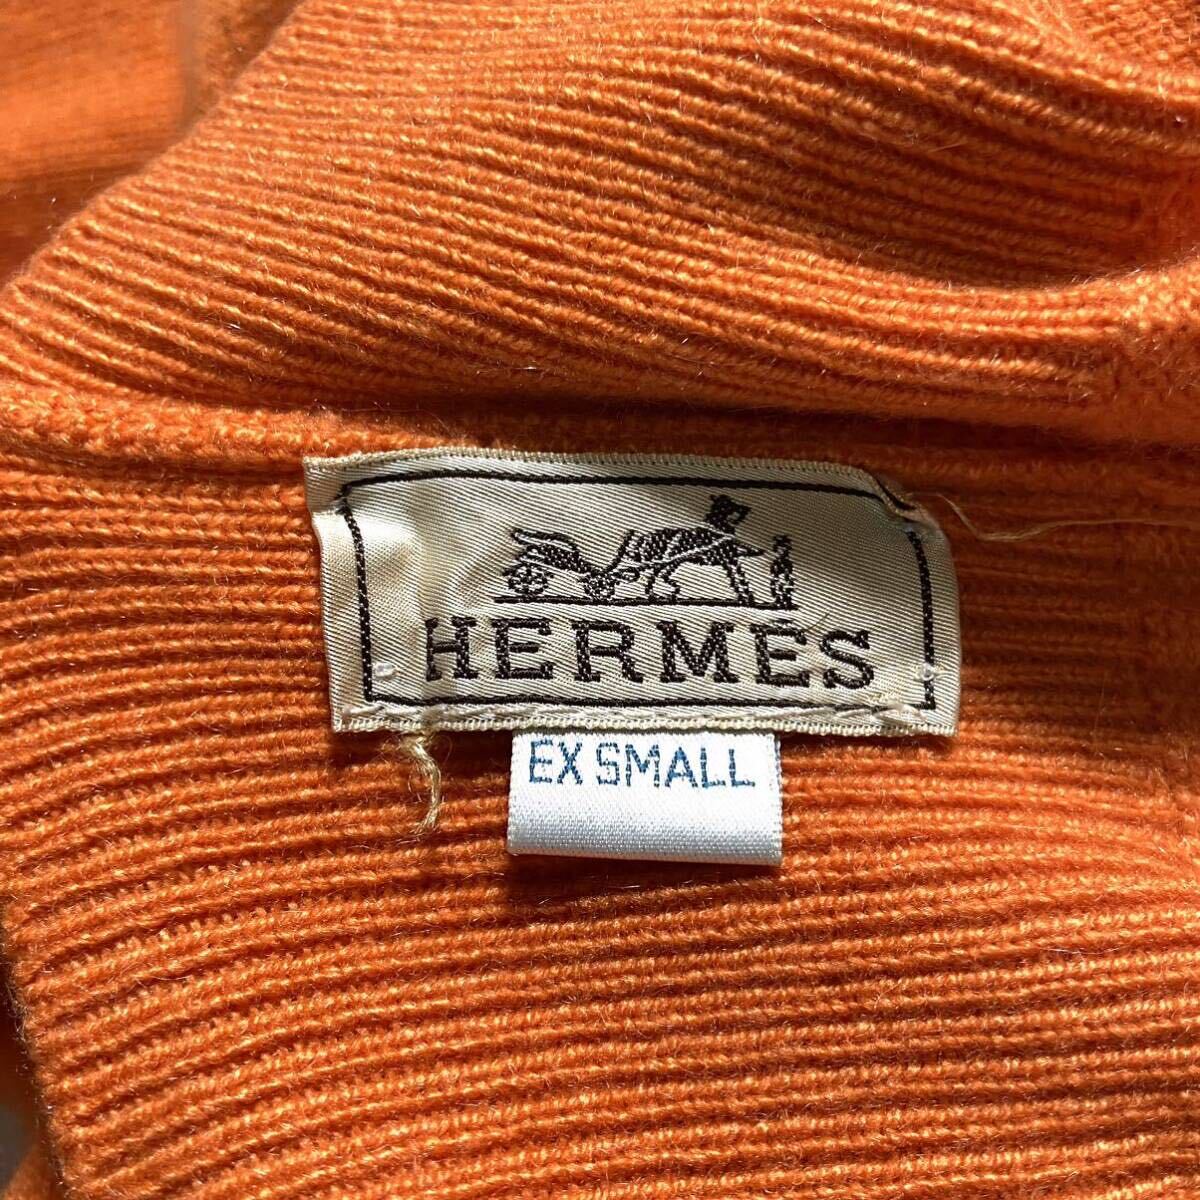  кашемир 100% HERMES Scotland производства вязаный свитер Hermes orange ta-toru шея высший класс 